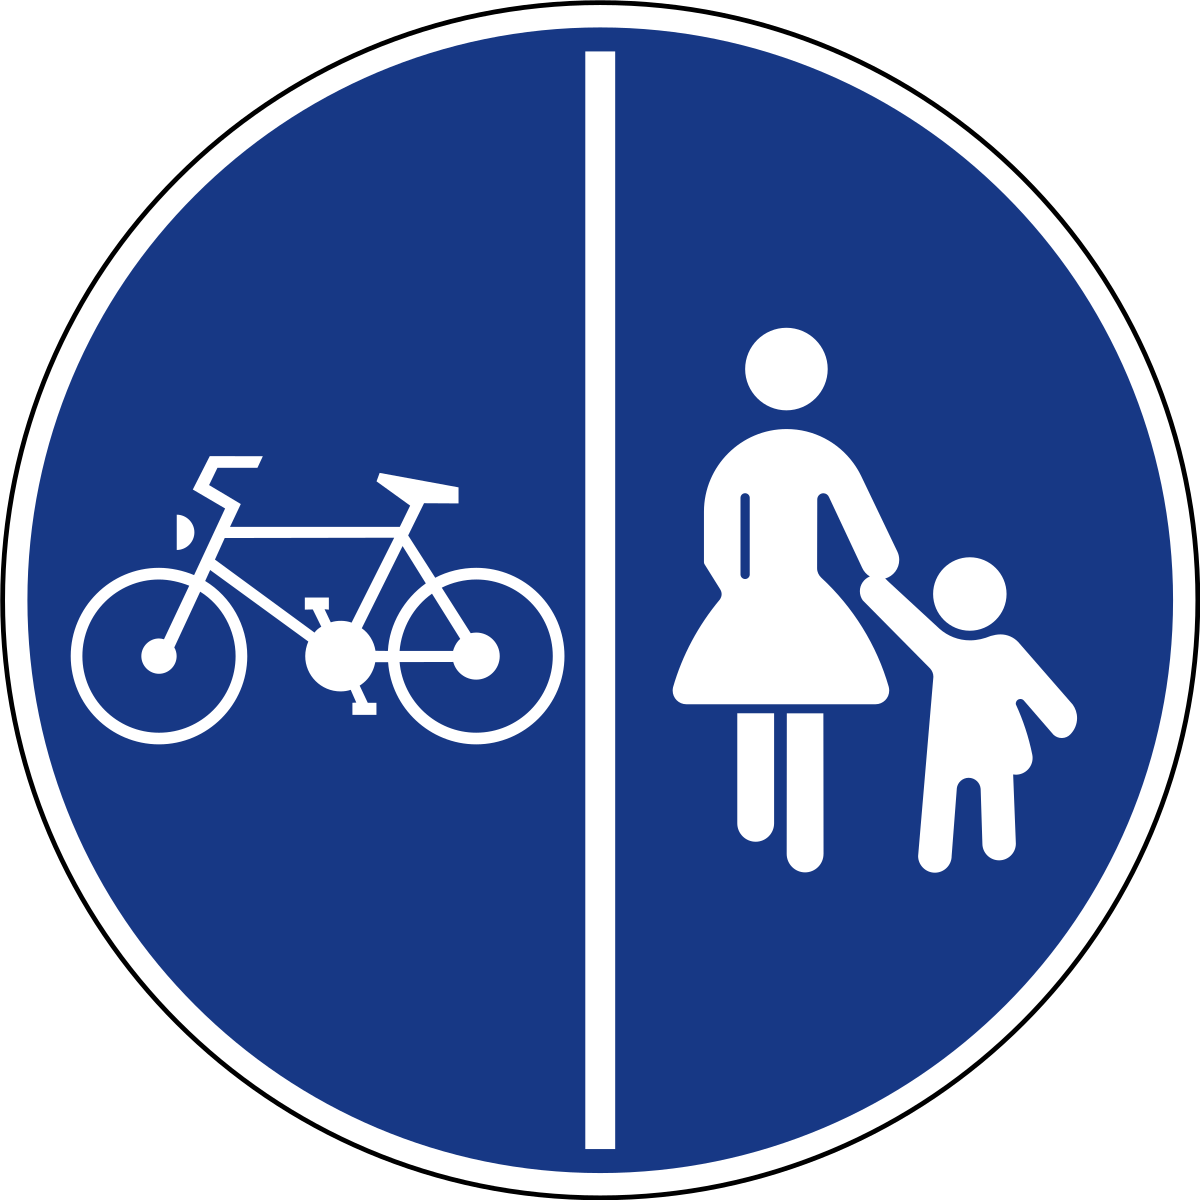 Ребенок велосипедная дорожка